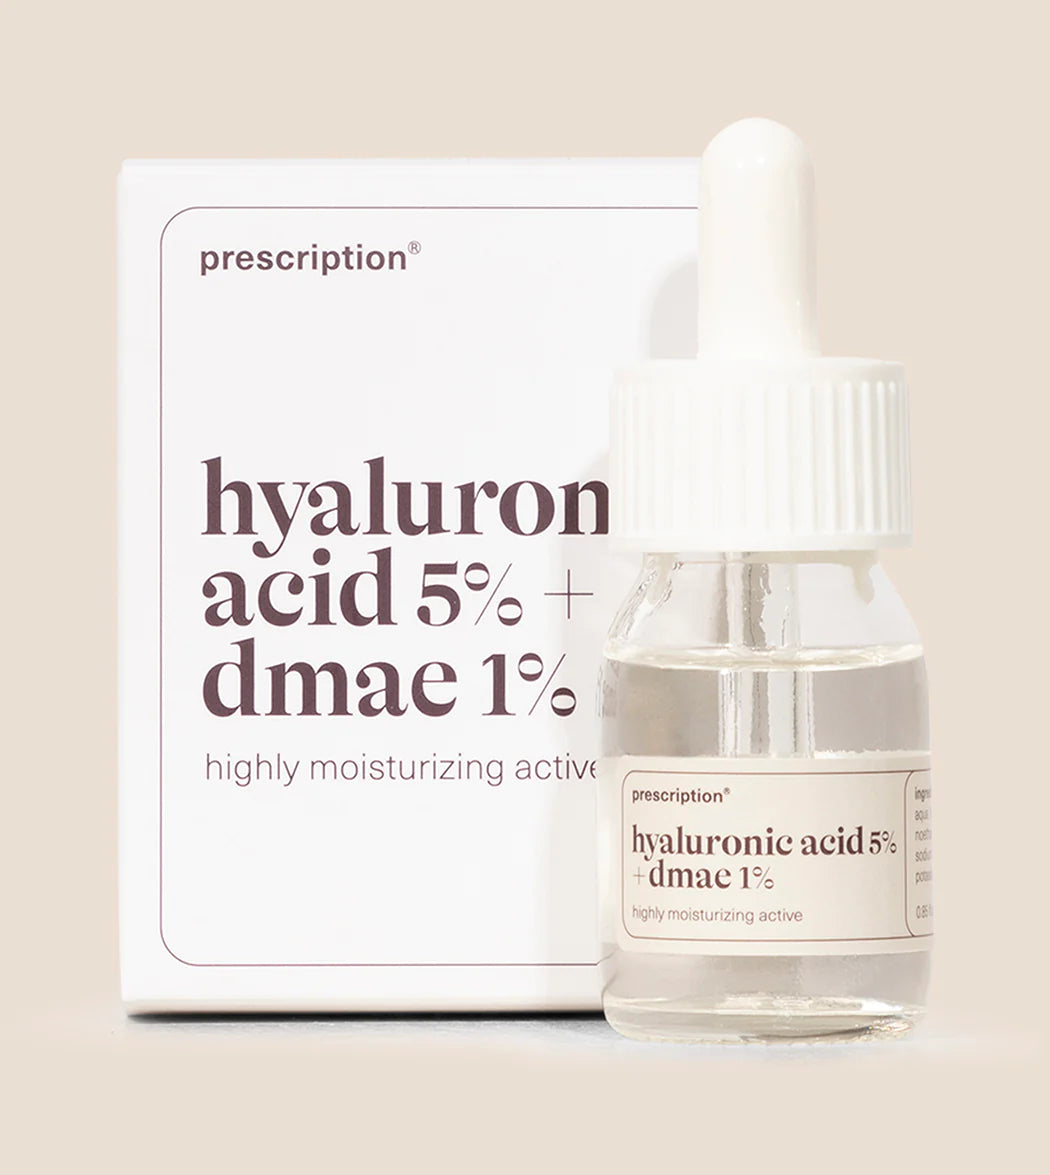 Prescription - Hyaluronic acid 5% + dmae 1%